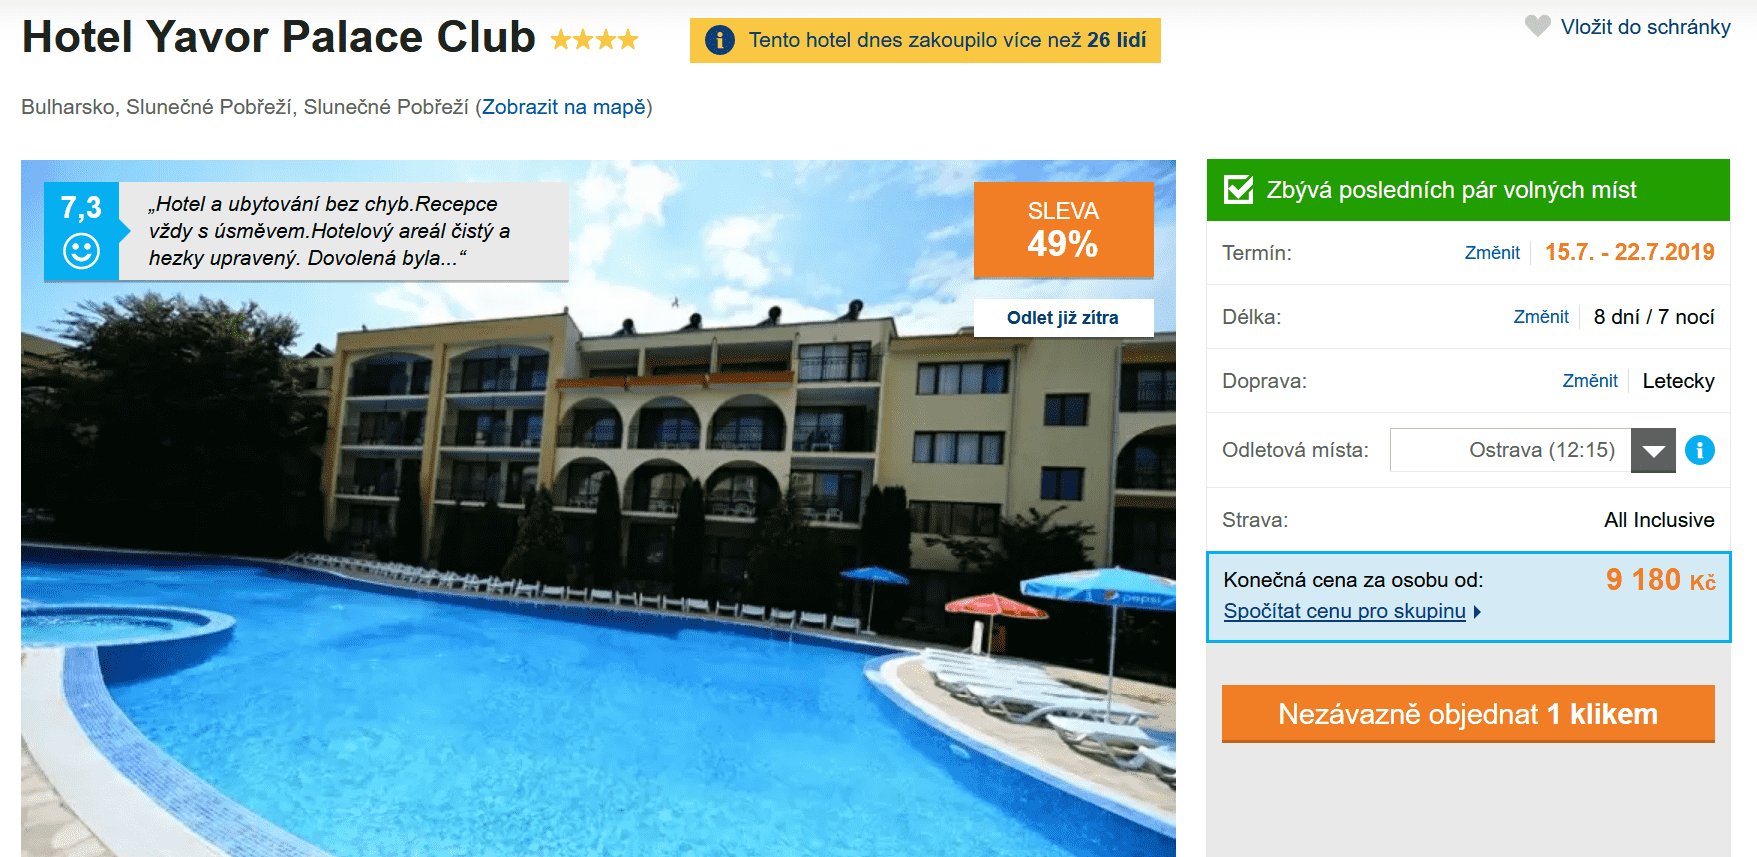 Zájezd Bulharsko (hotel Yavor Palace Club)